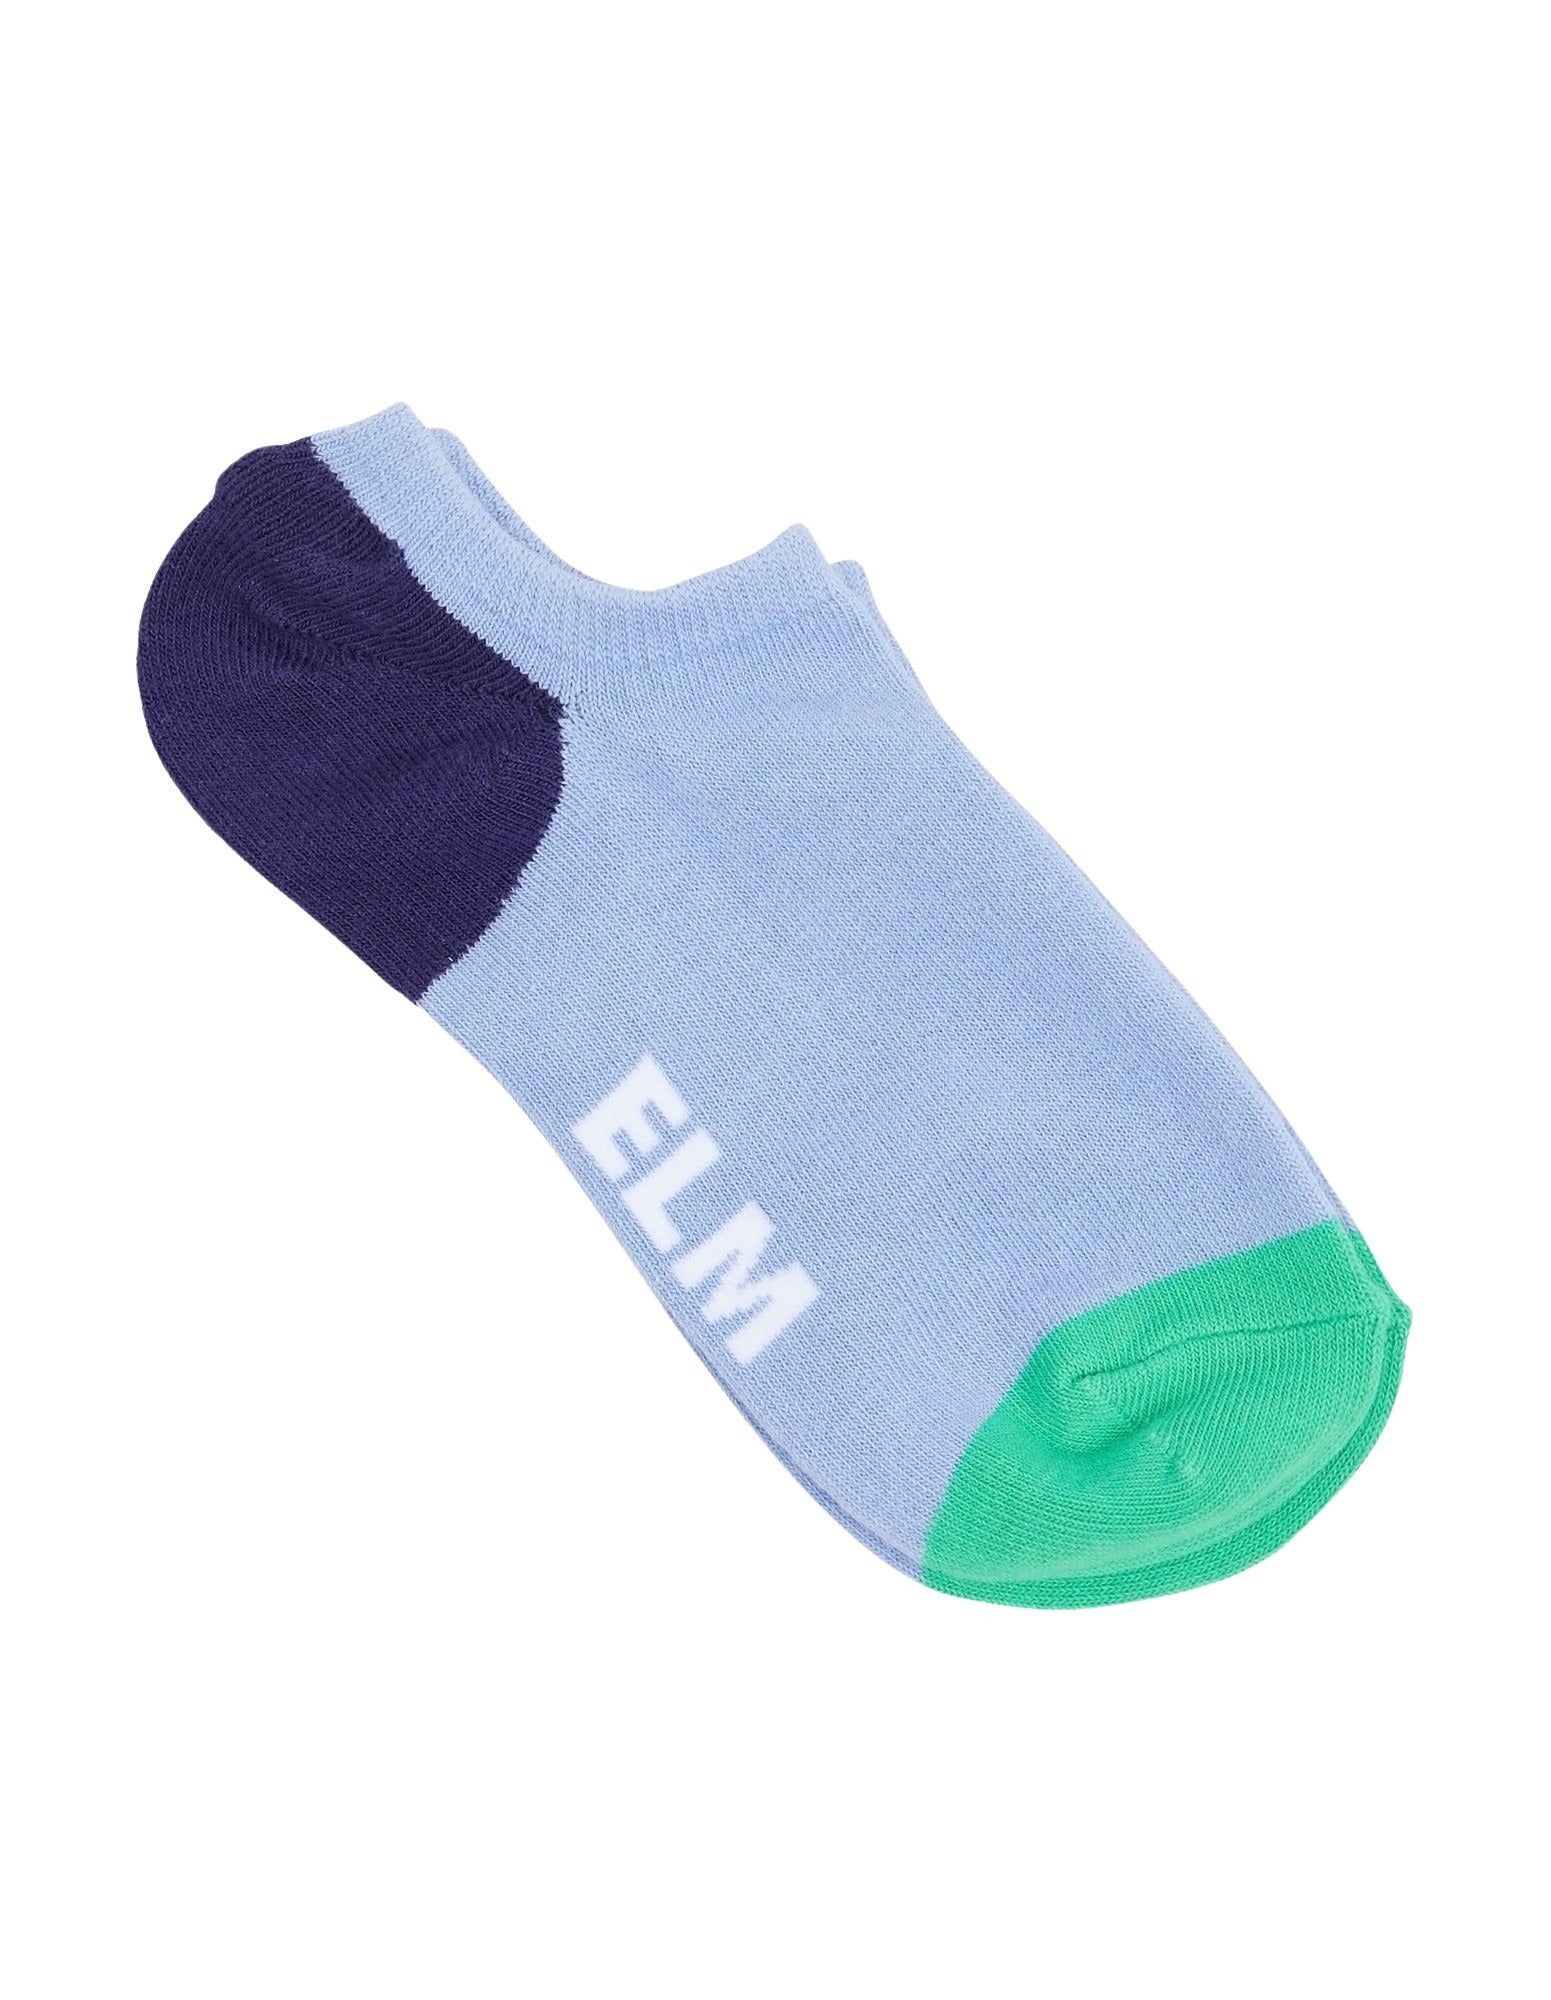 Elm - No Show Sock 2 PK - Orbit Green/Blue/Pink